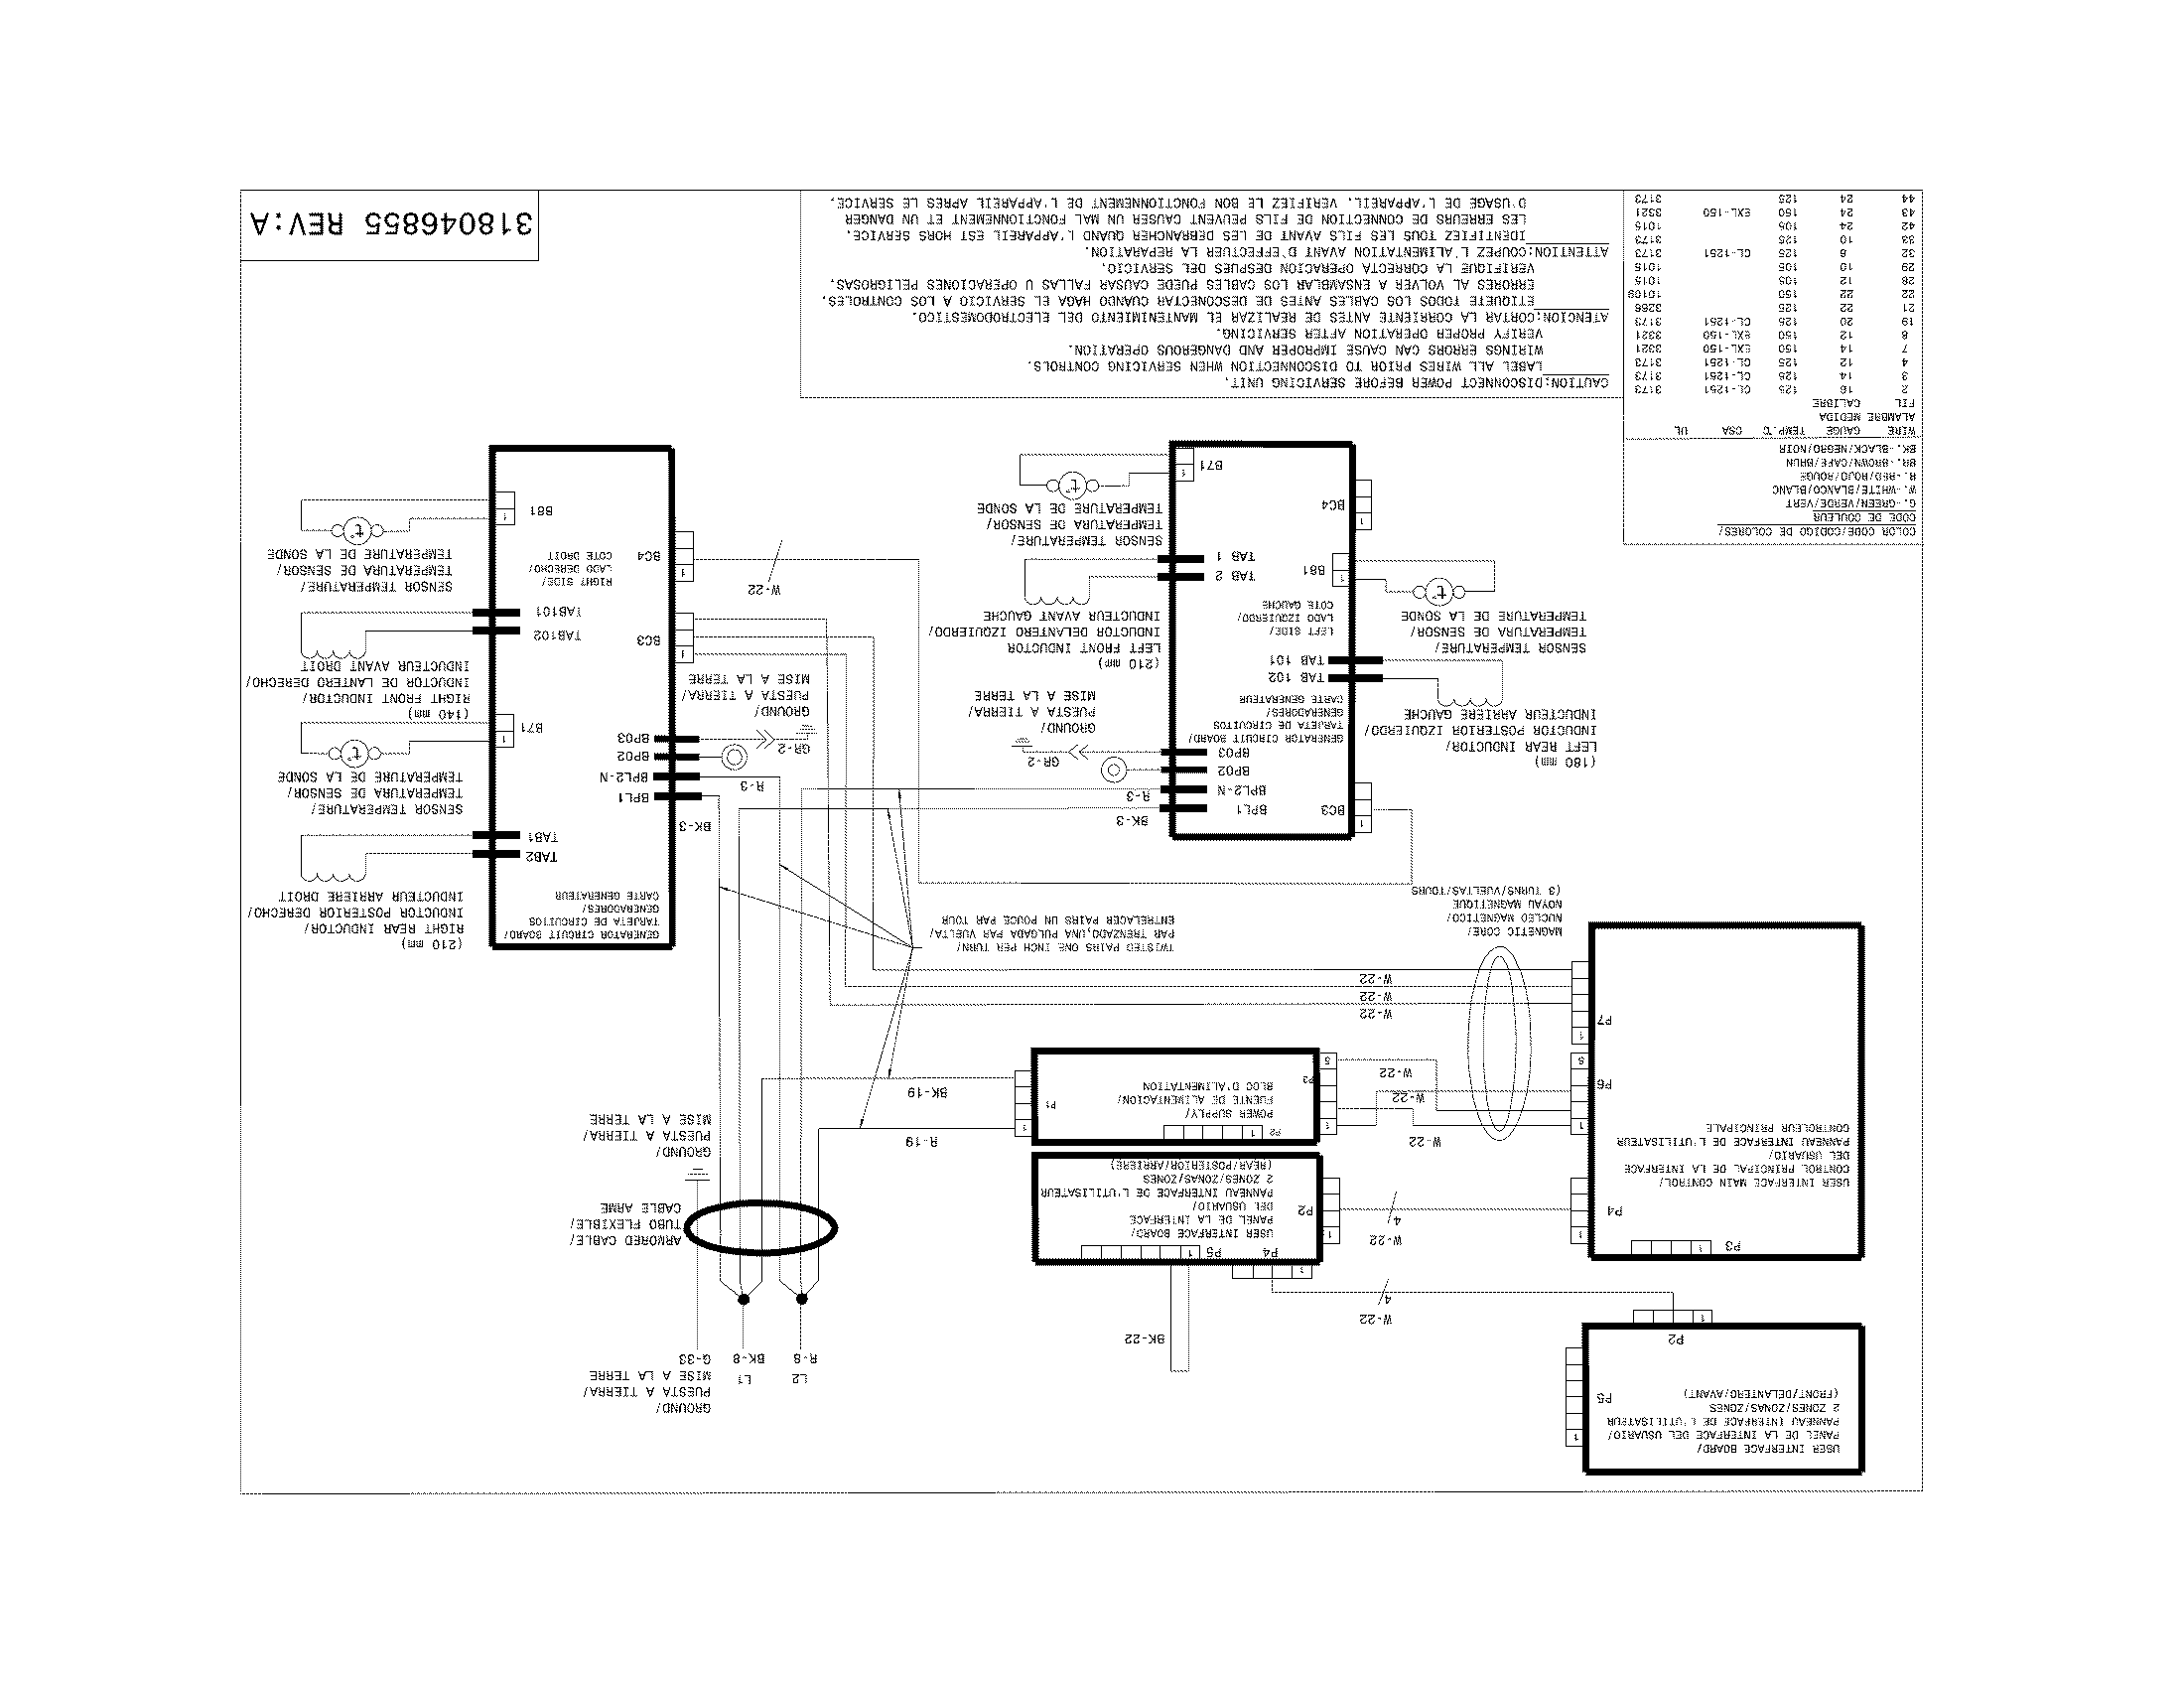 Electrolux 2100 Vacuum Wiring Diagram Schematic - Wiring Diagram & Schemas